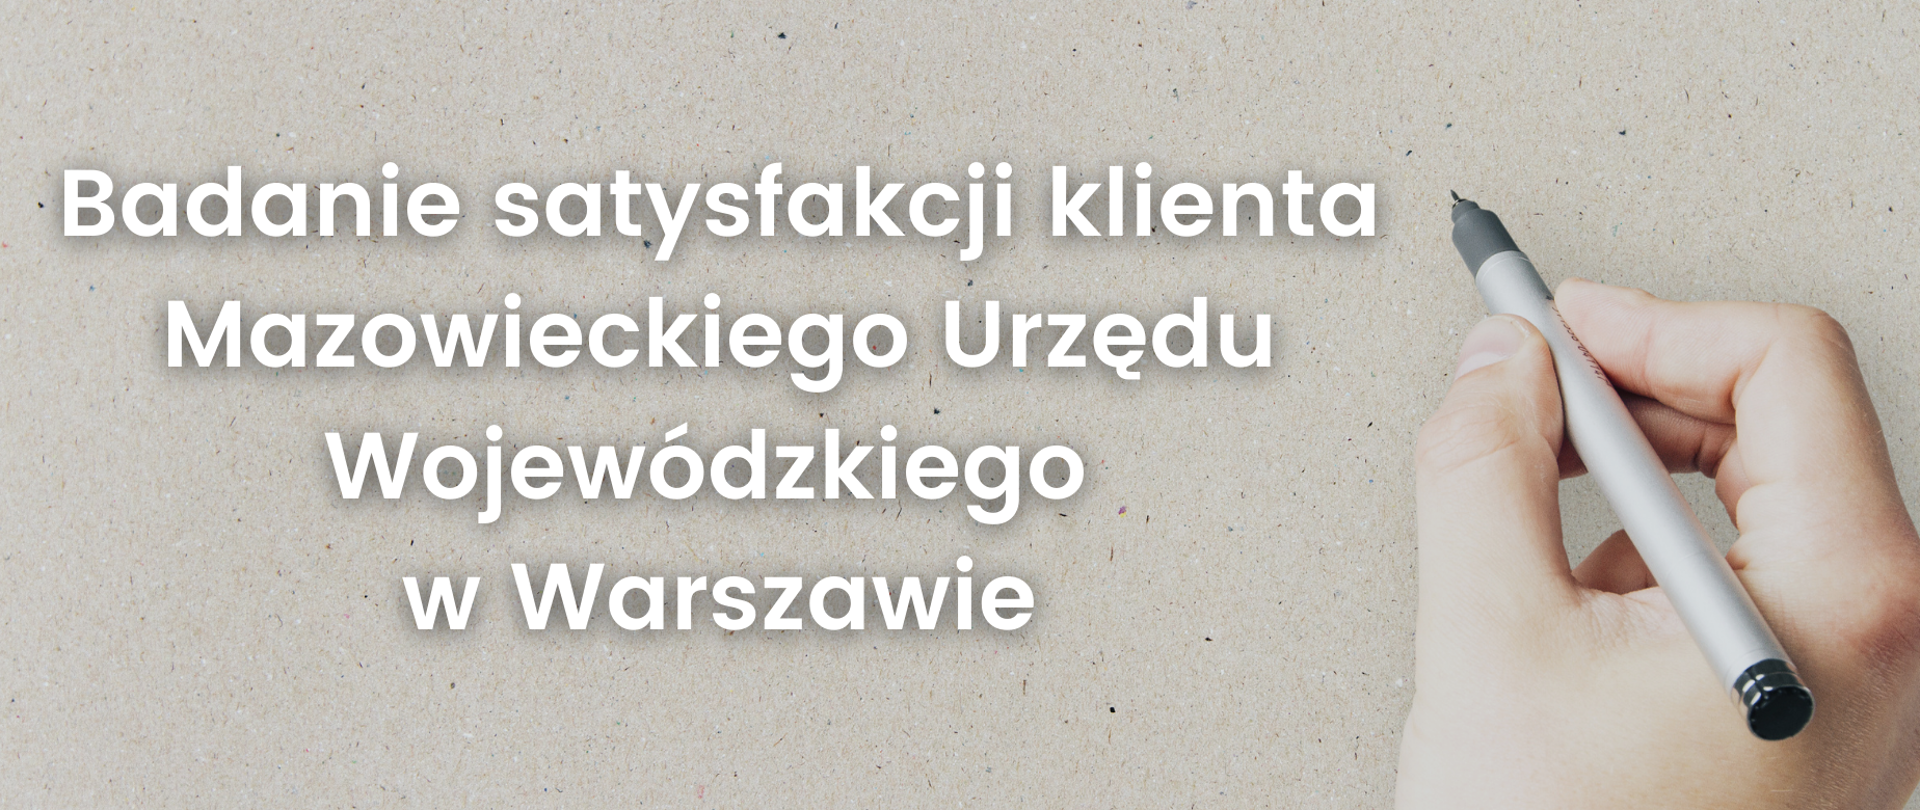 Grafika z napisem badanie satysfakcji Klienta Mazowieckiego Urzędu Wojewódzkiego w Warszawie. Obok napisu dłoń trzymająca długopis. 